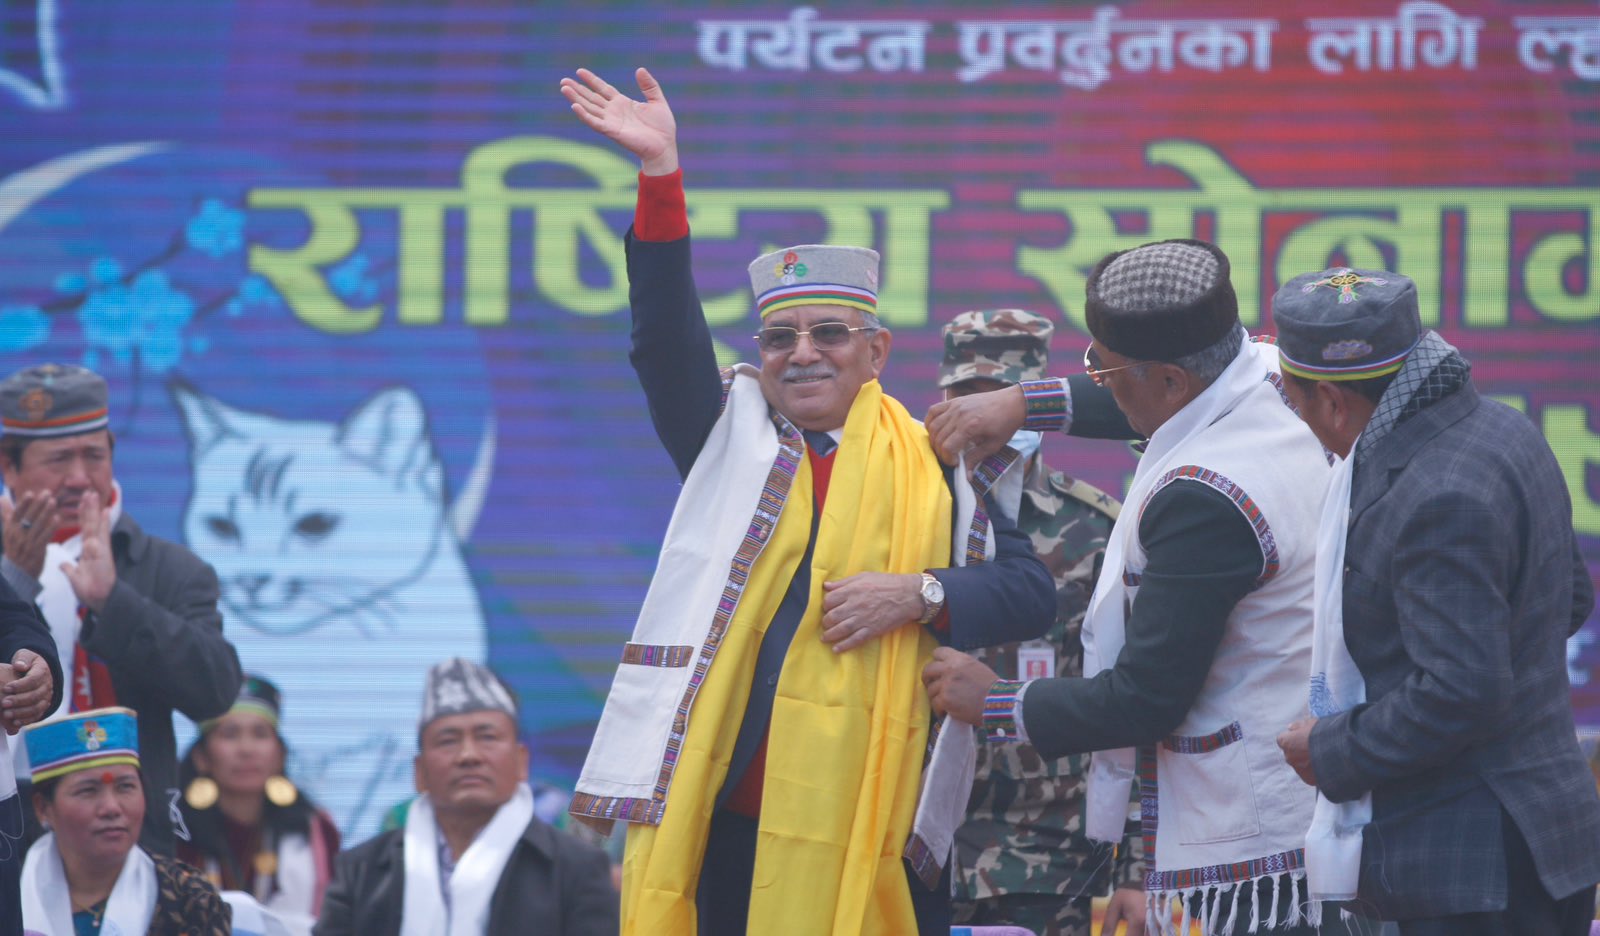 सभ्यता र संस्कृतिमा नेपाल विश्वमै वैभवशाली छ : प्रधानमन्त्री